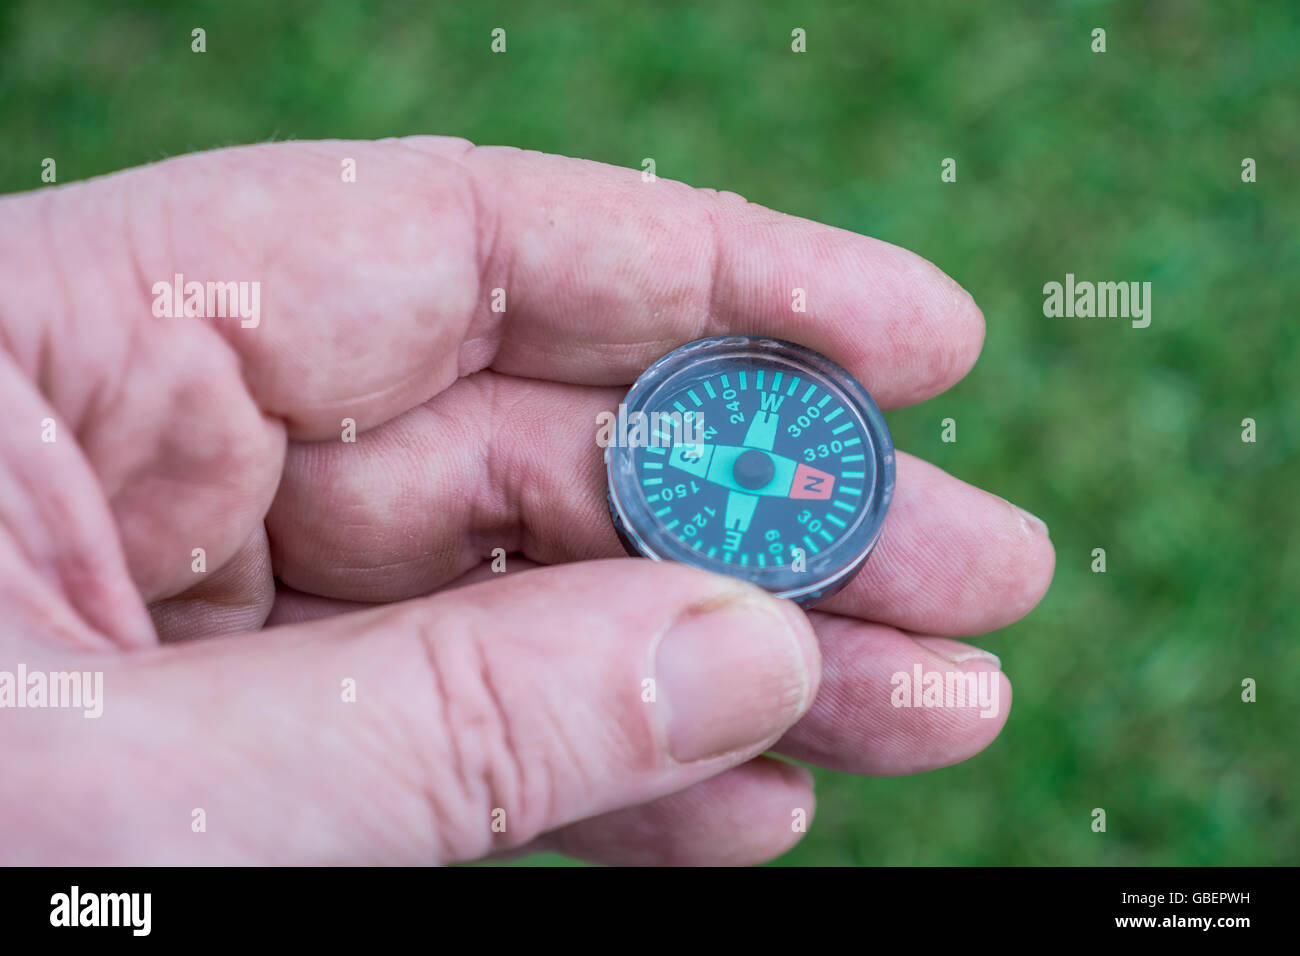 Konzept von Richtung Navigation, und zu wissen, wohin Sie gehen oder ihren Weg finden, von einer Hand dargestellt - magnetische Taste Kompass statt. Stockfoto